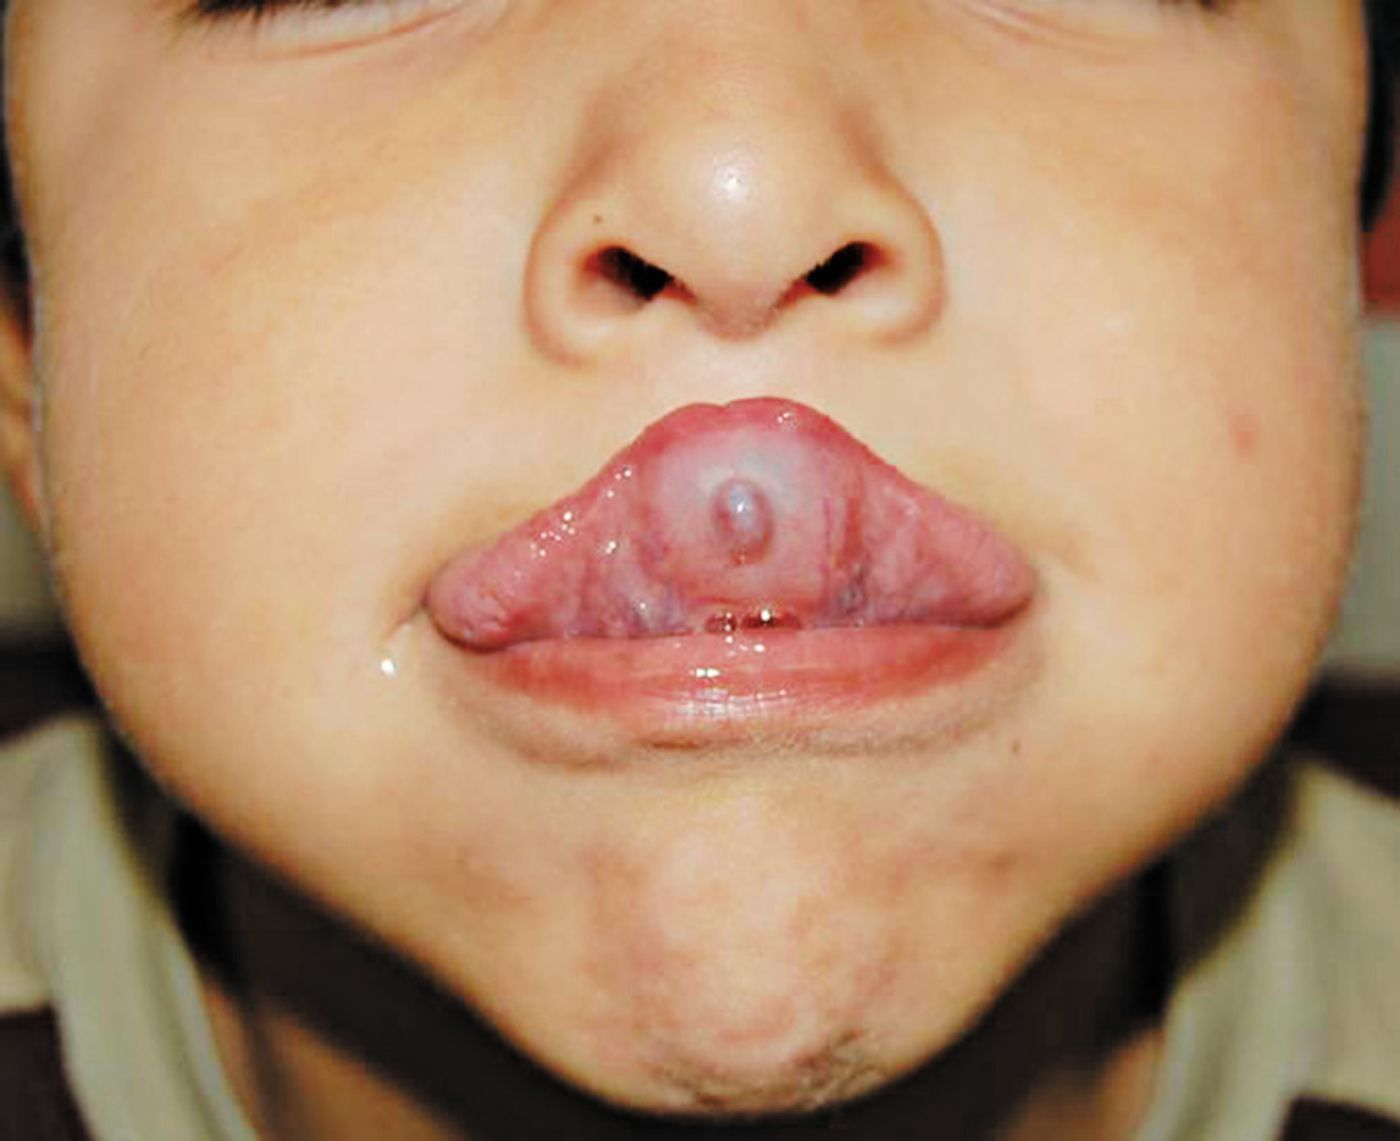 mucocele under tongue